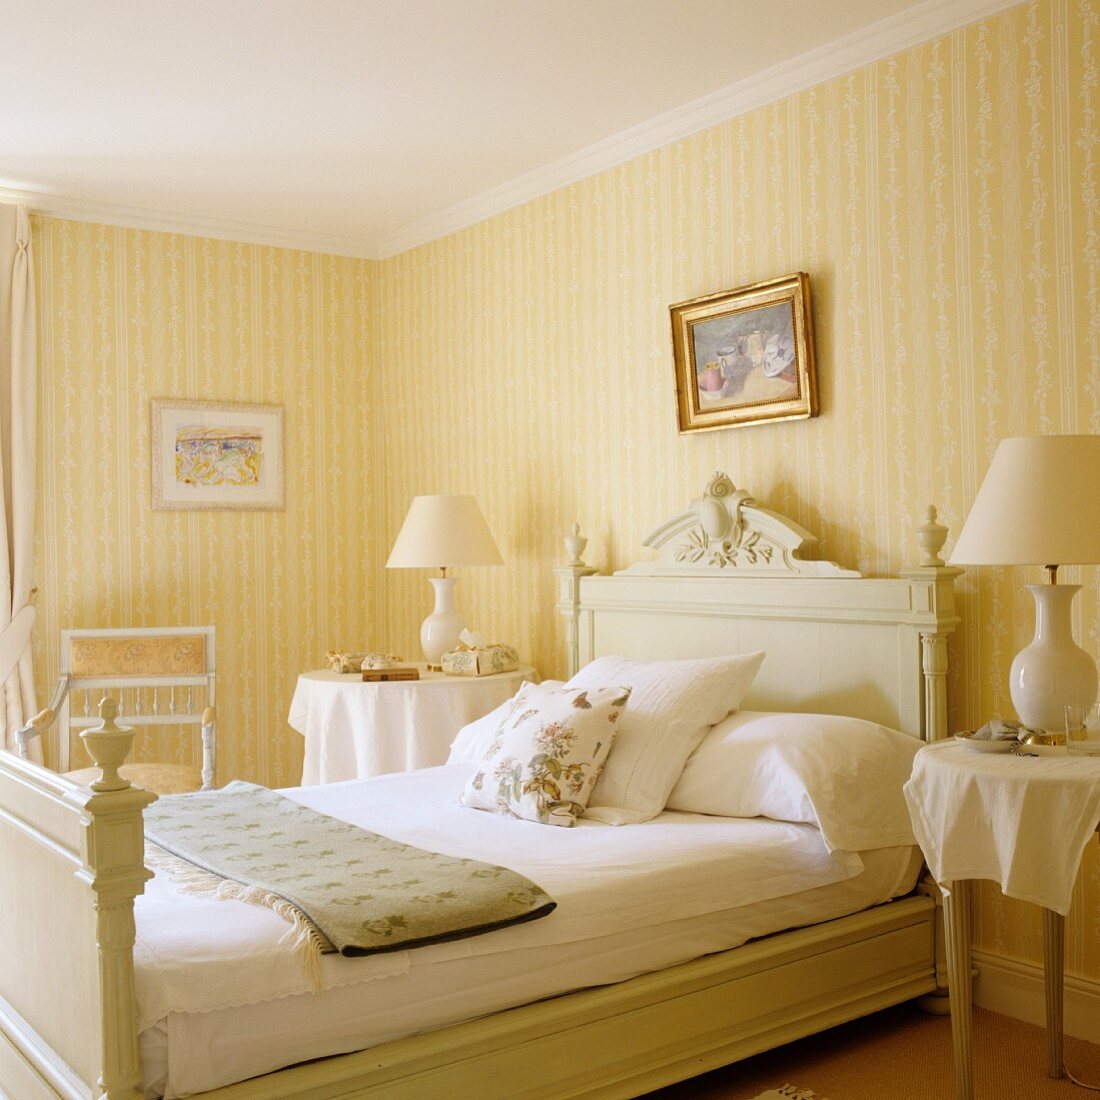 Helles Schlafzimmer im traditionellen Stil mit gelb-weissen Streifen auf Tapete an Wand